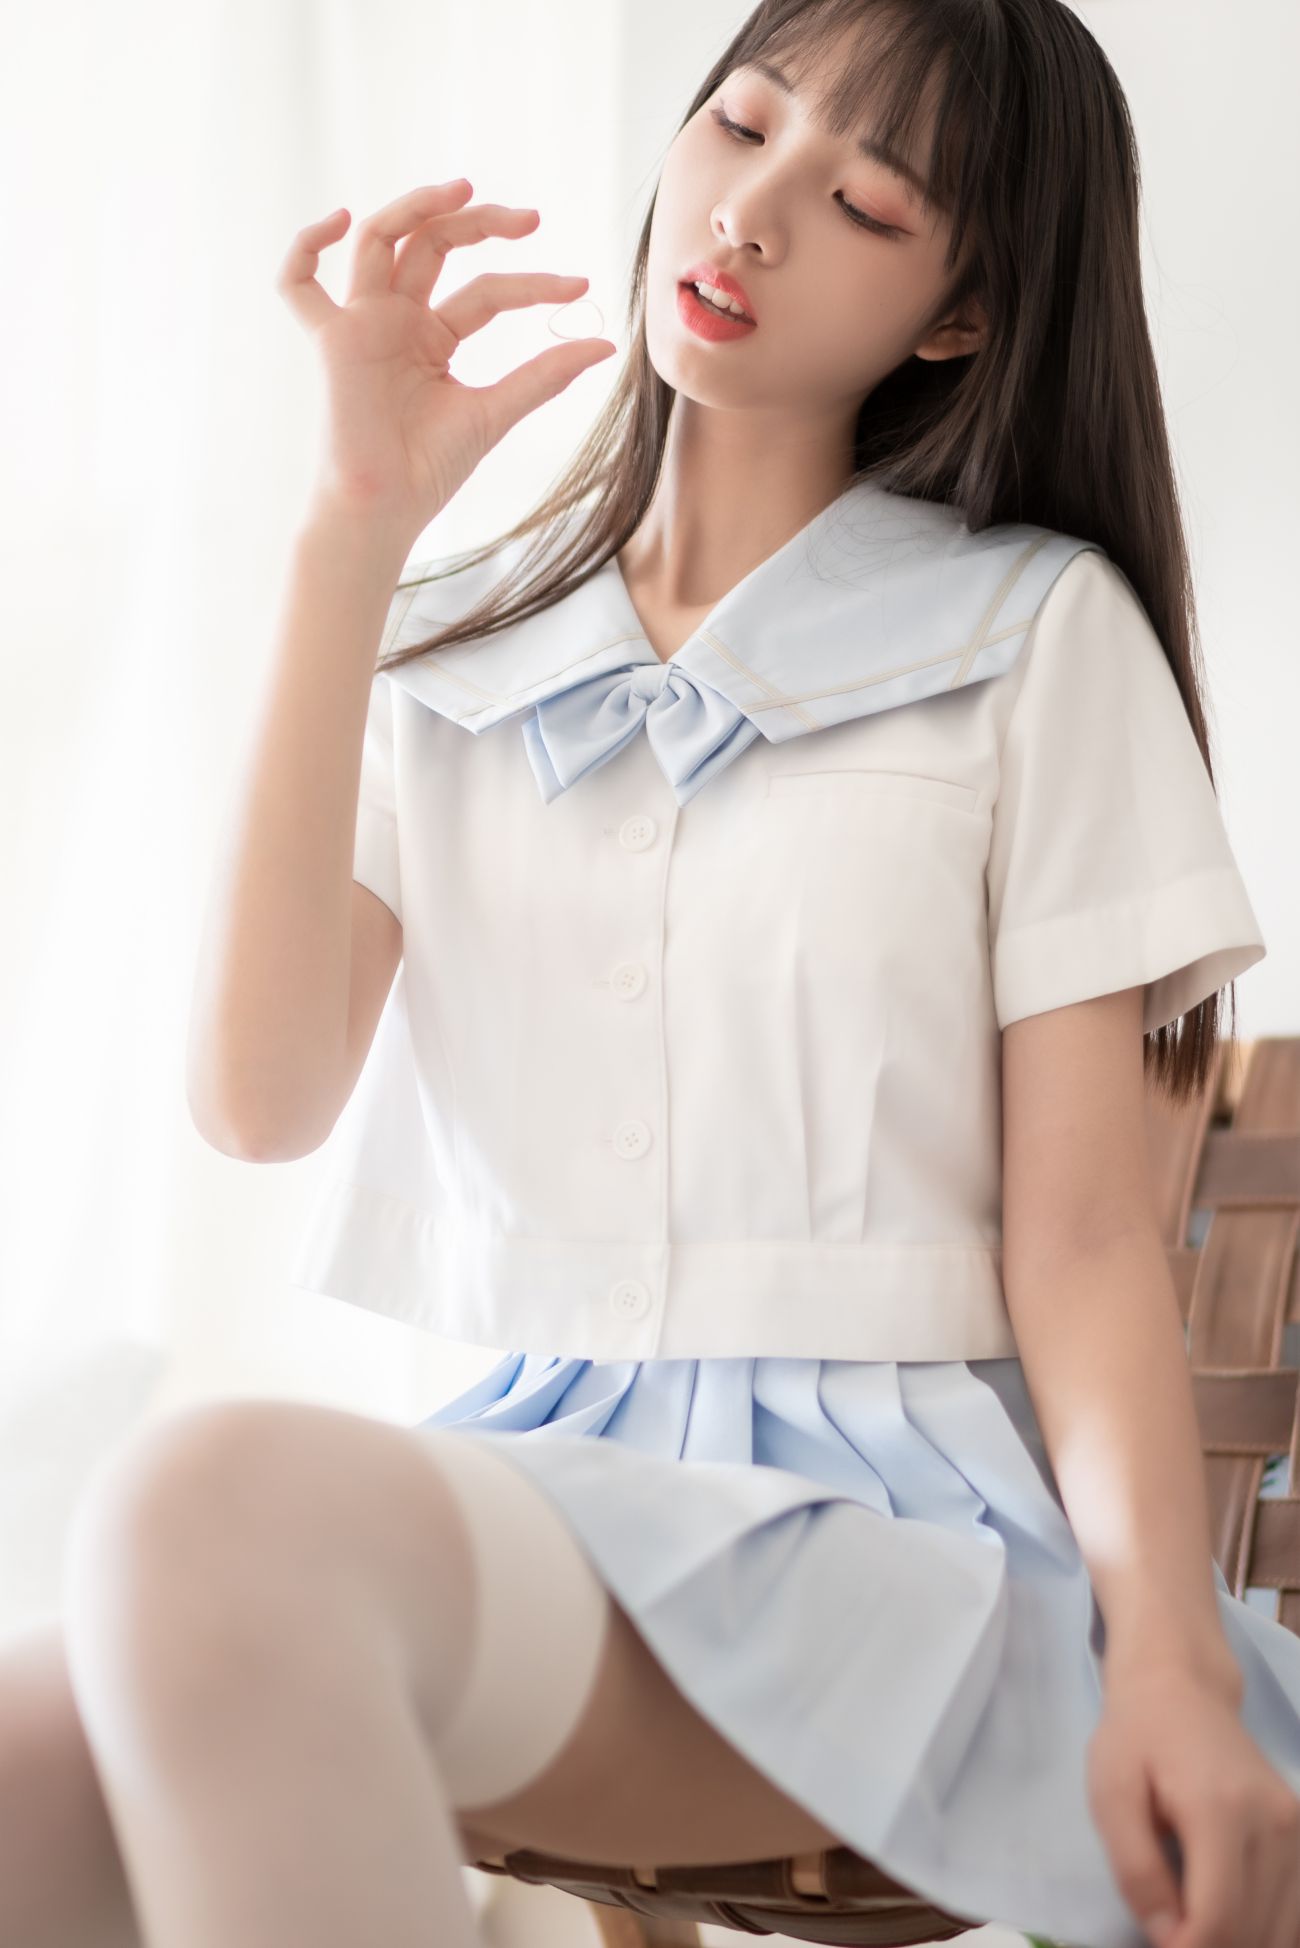 微博美少女西瓜性感写真JK学生服 (29)